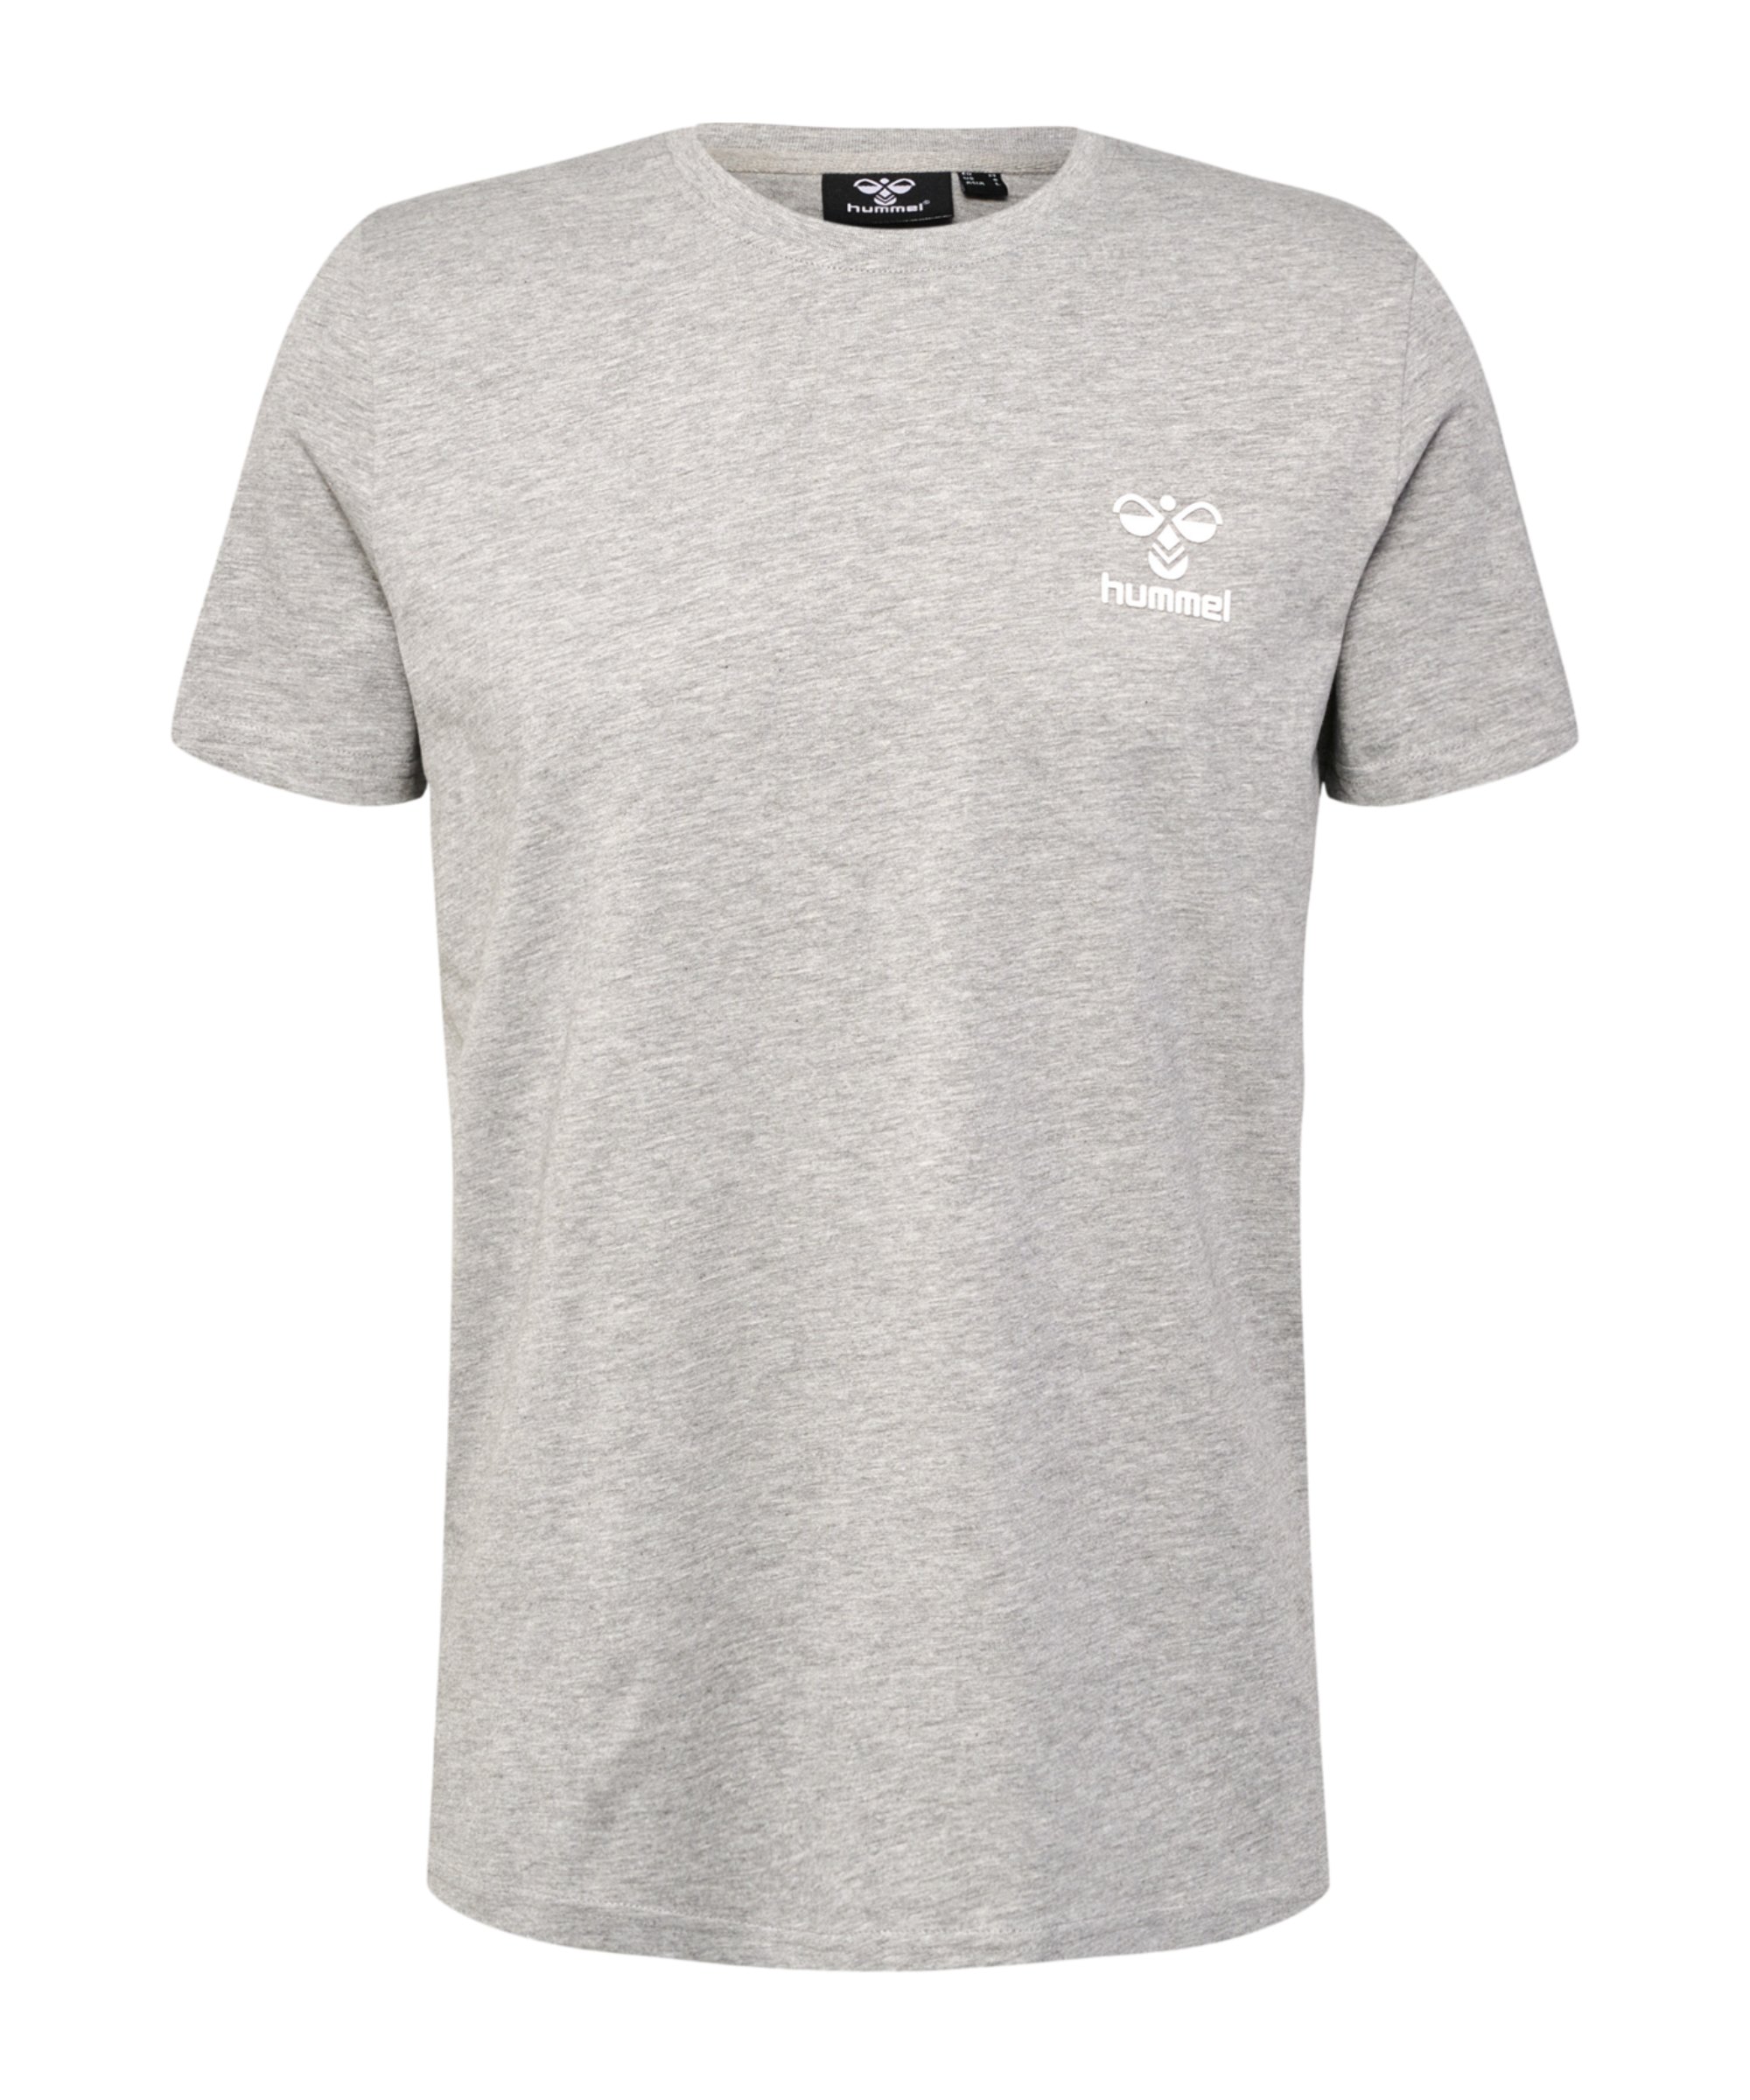 T-Shirt hmllCONS Grau grau Hummel